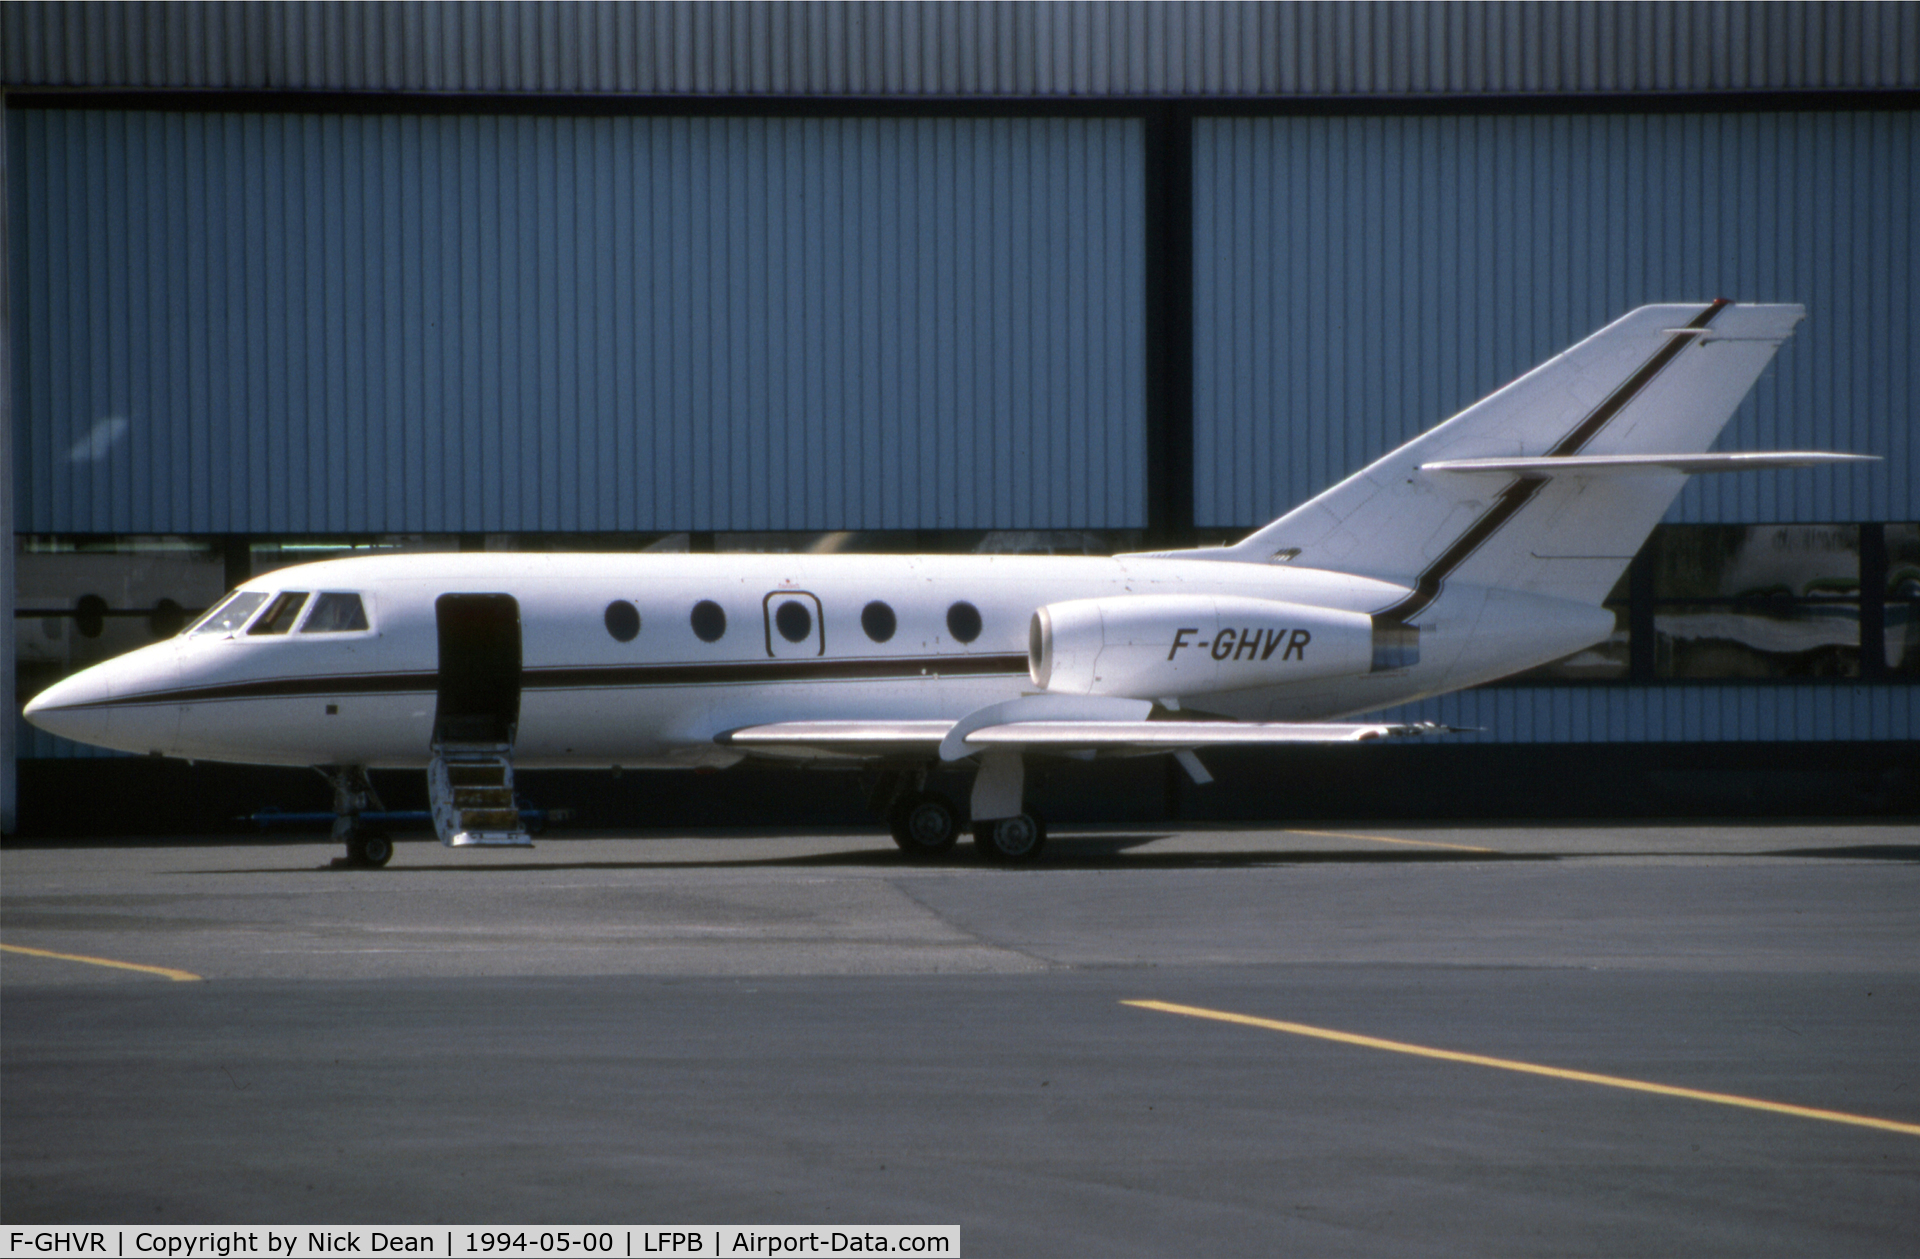 F-GHVR, 1972 Dassault Falcon (Mystere) 20F C/N 262, LFPB